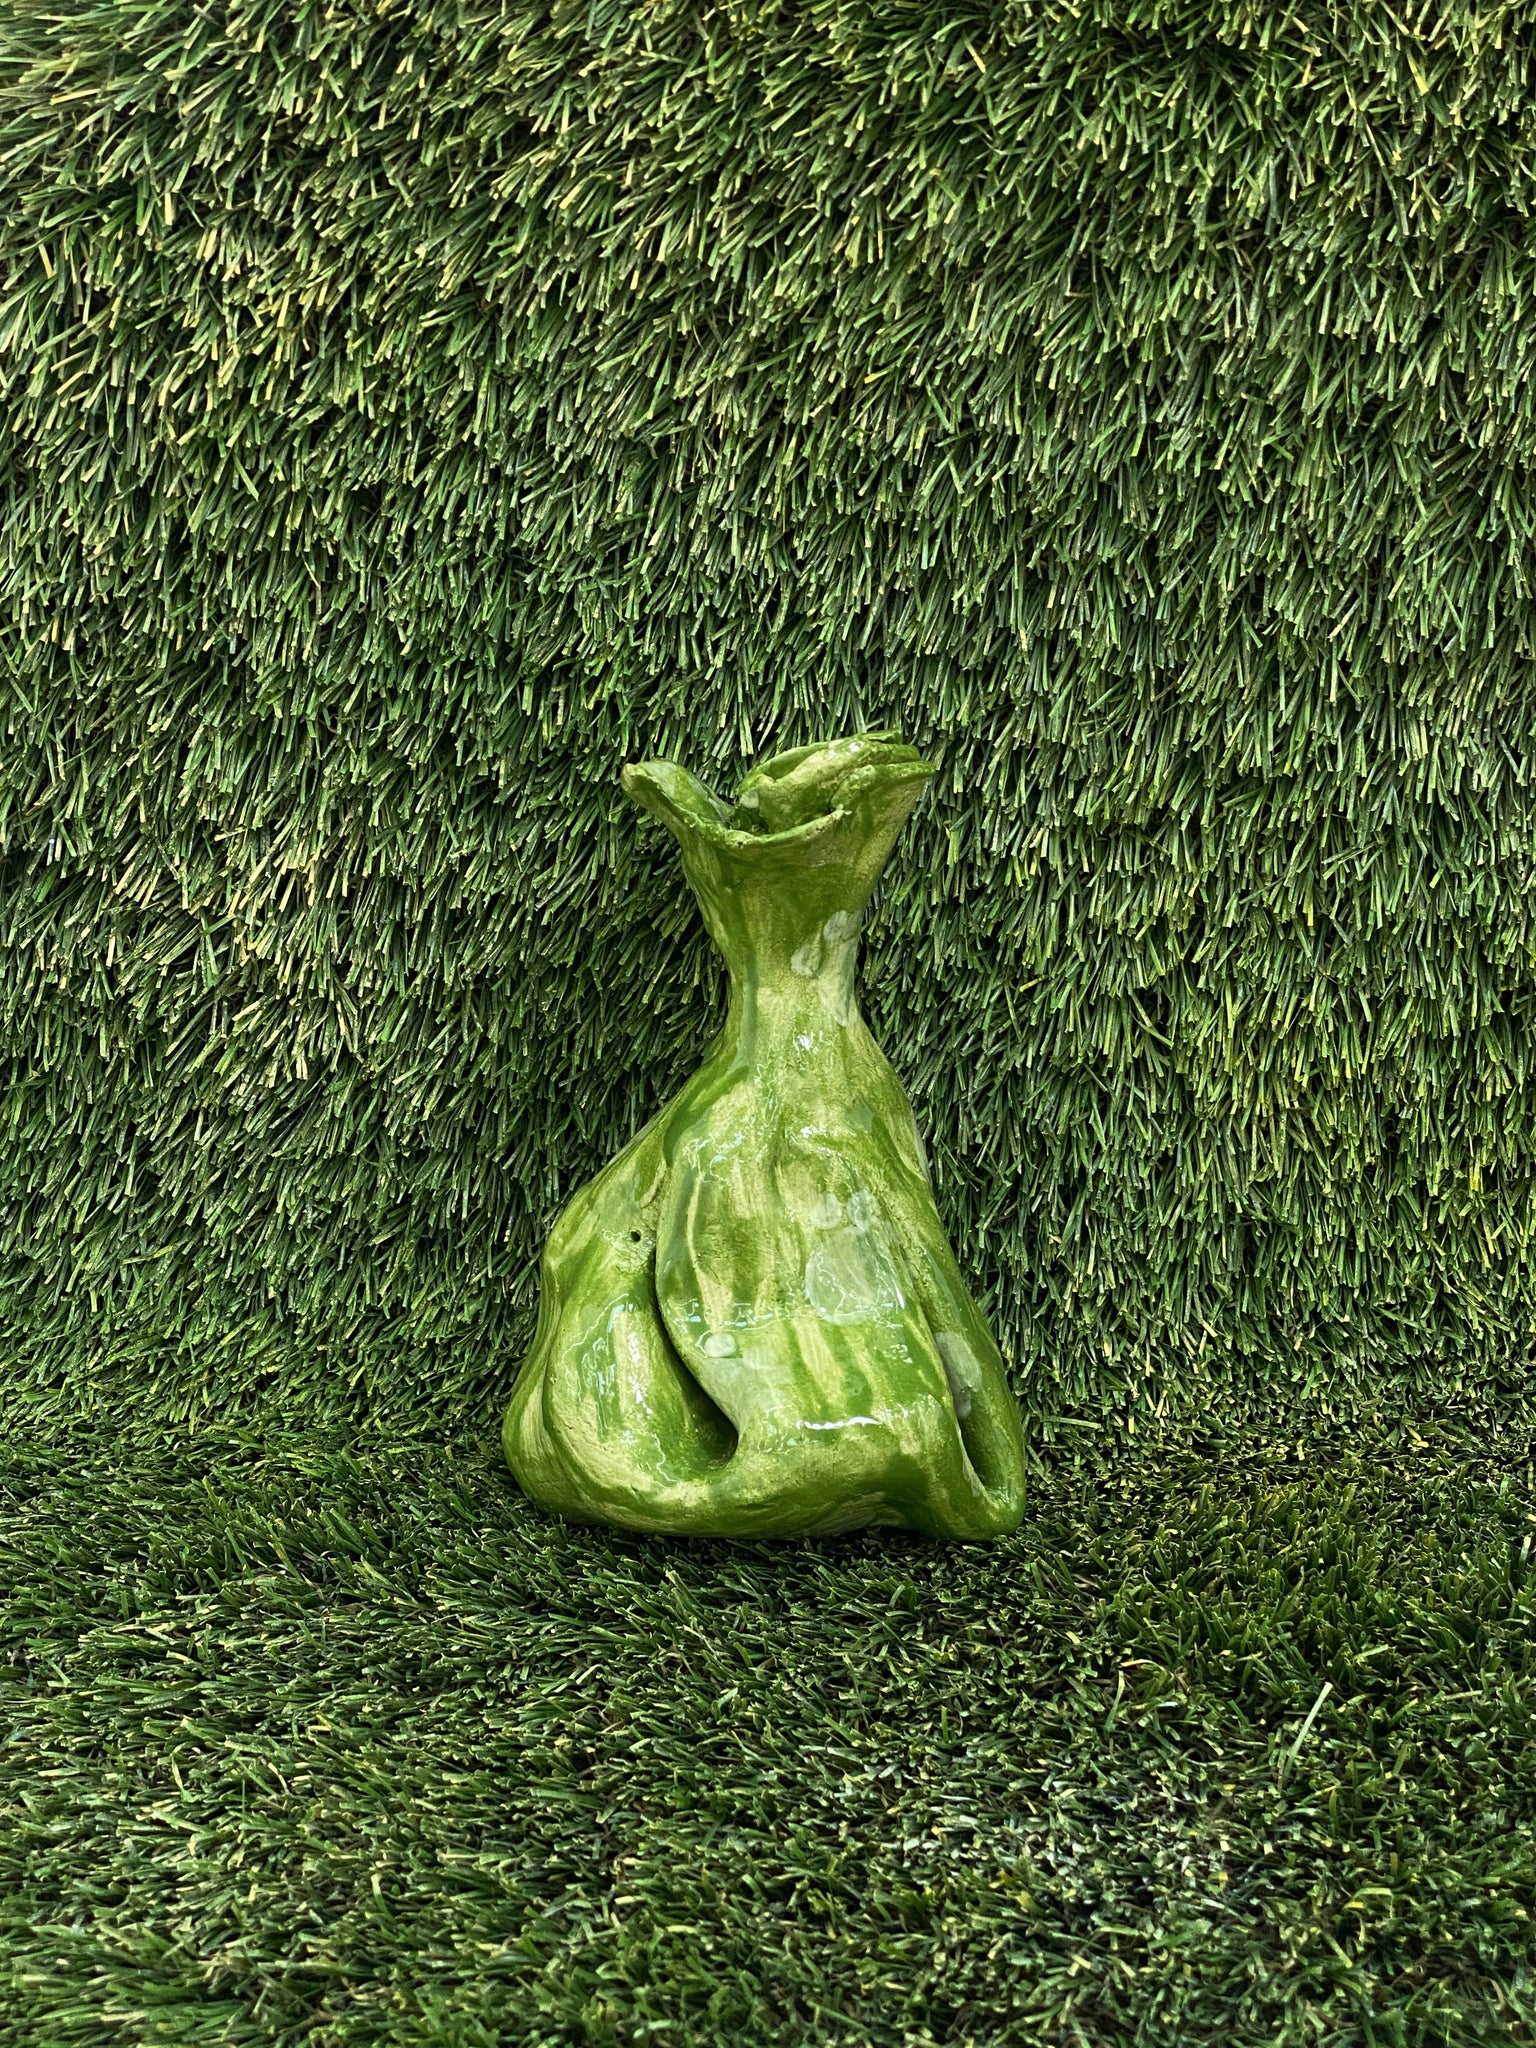 Ceramic sculpture of dog poop bag in olive green